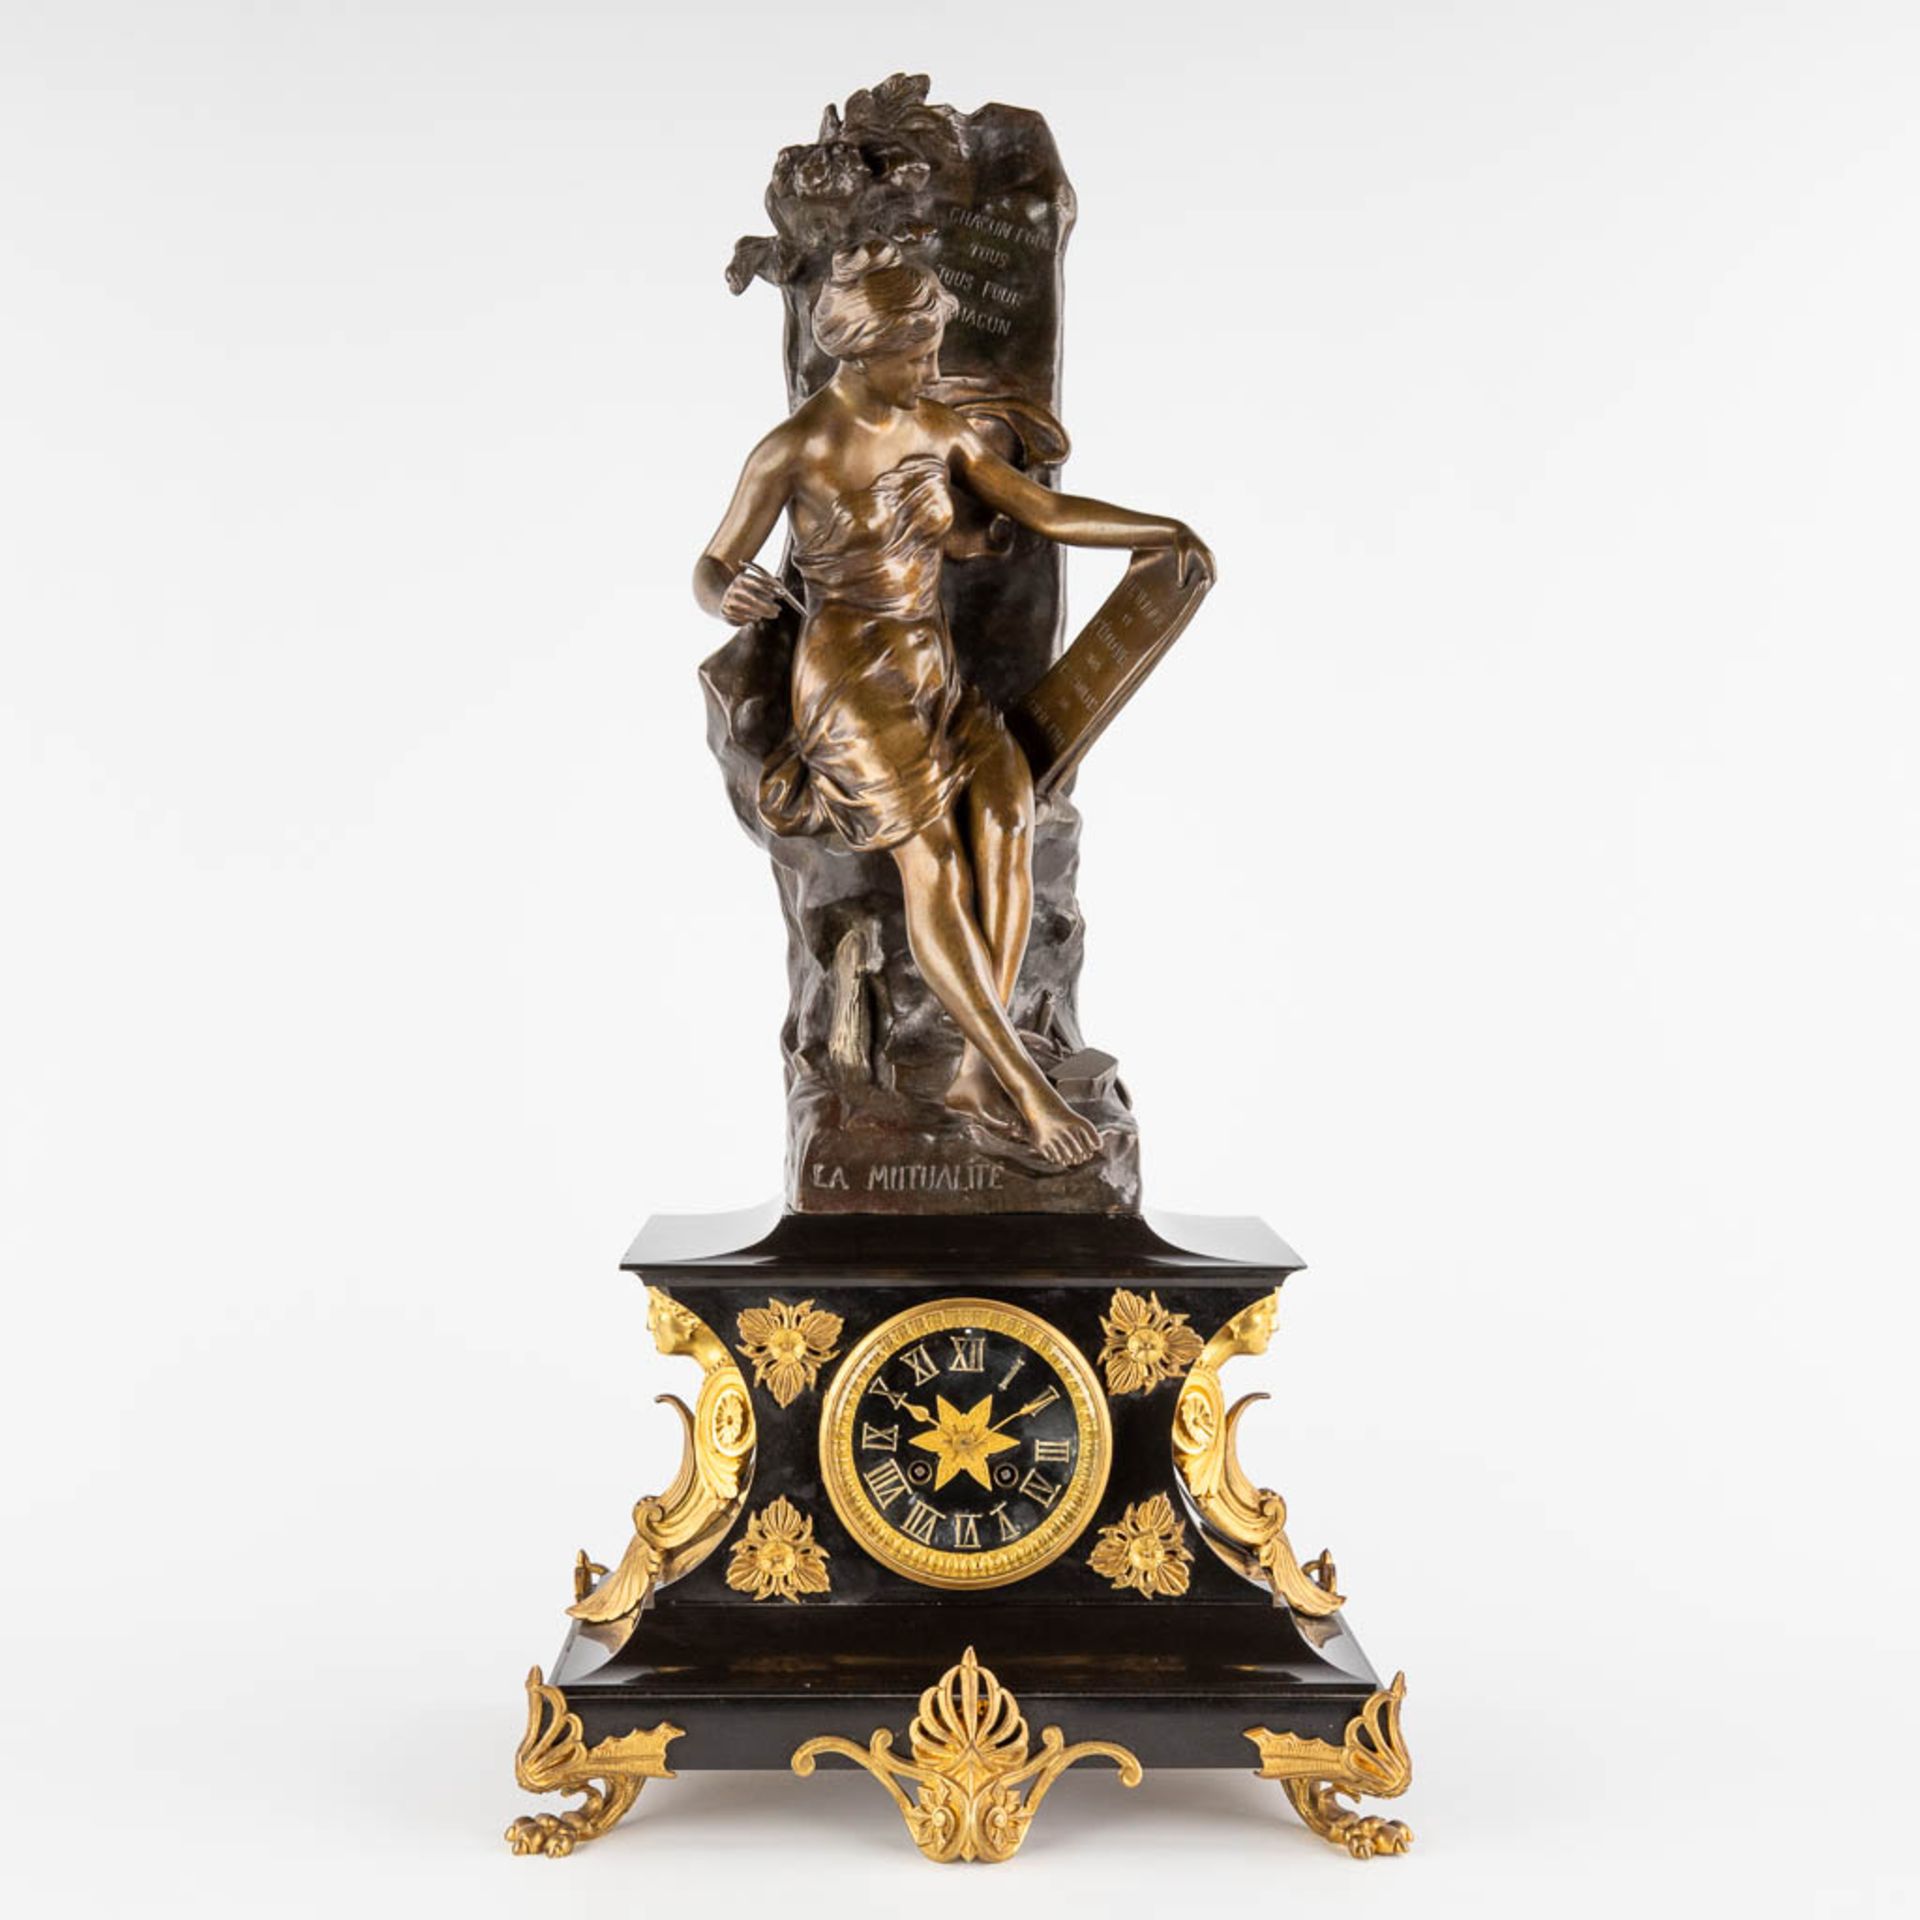 Emile PICAULT (1833-1915) 'La Mutualité', a mantle clock with patinated bronze figurine. 19th C. (D: